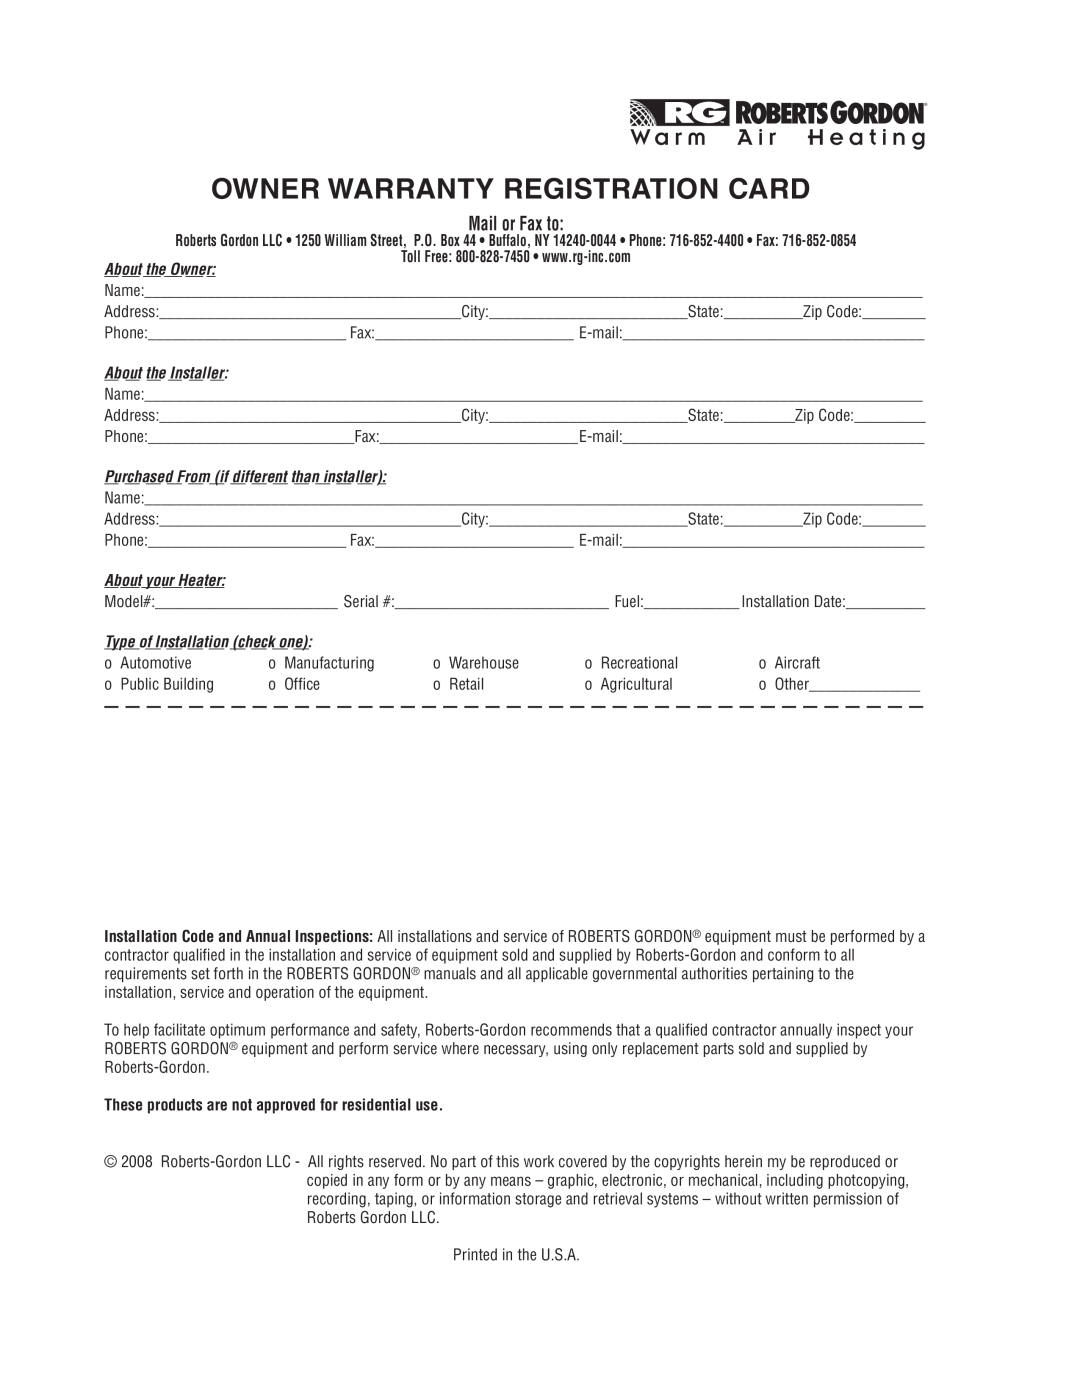 Roberts Gorden UHD[X][S][R] 175 Owner Warranty Registration Card, W a r m, A i r H e a t i n g, About the Owner 